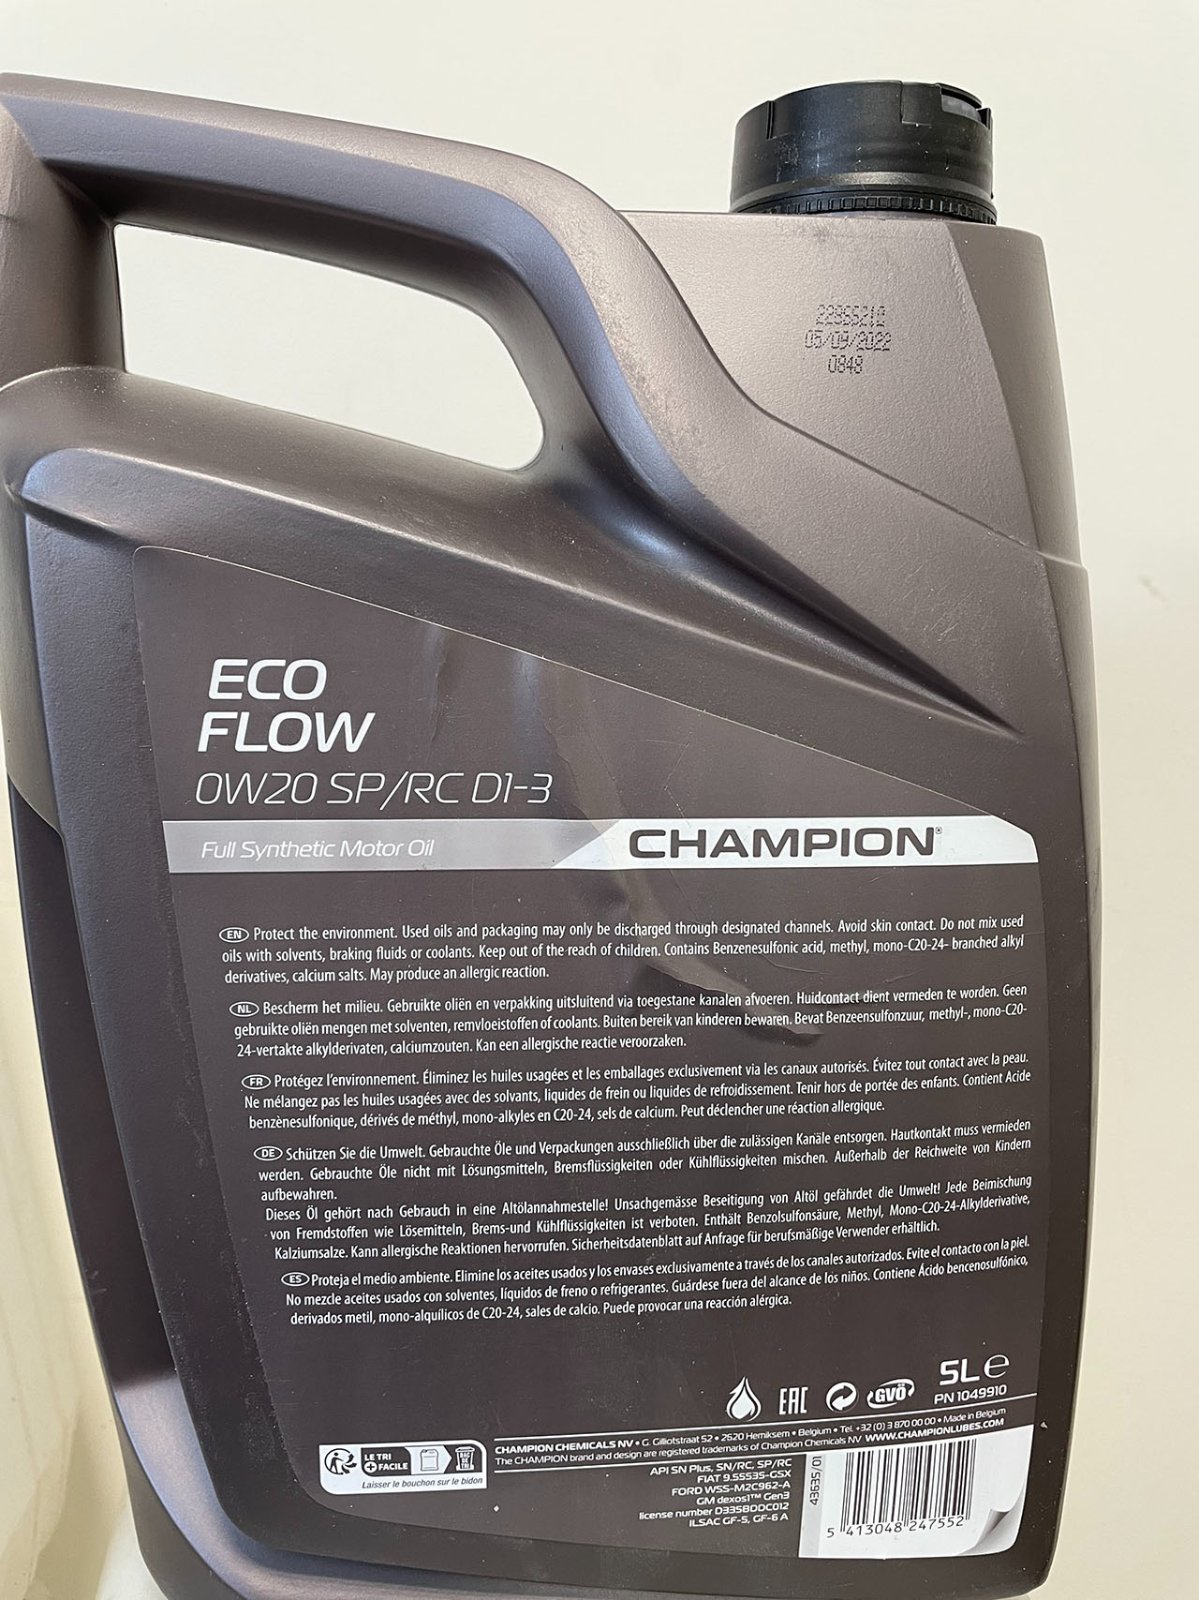 Eco flow